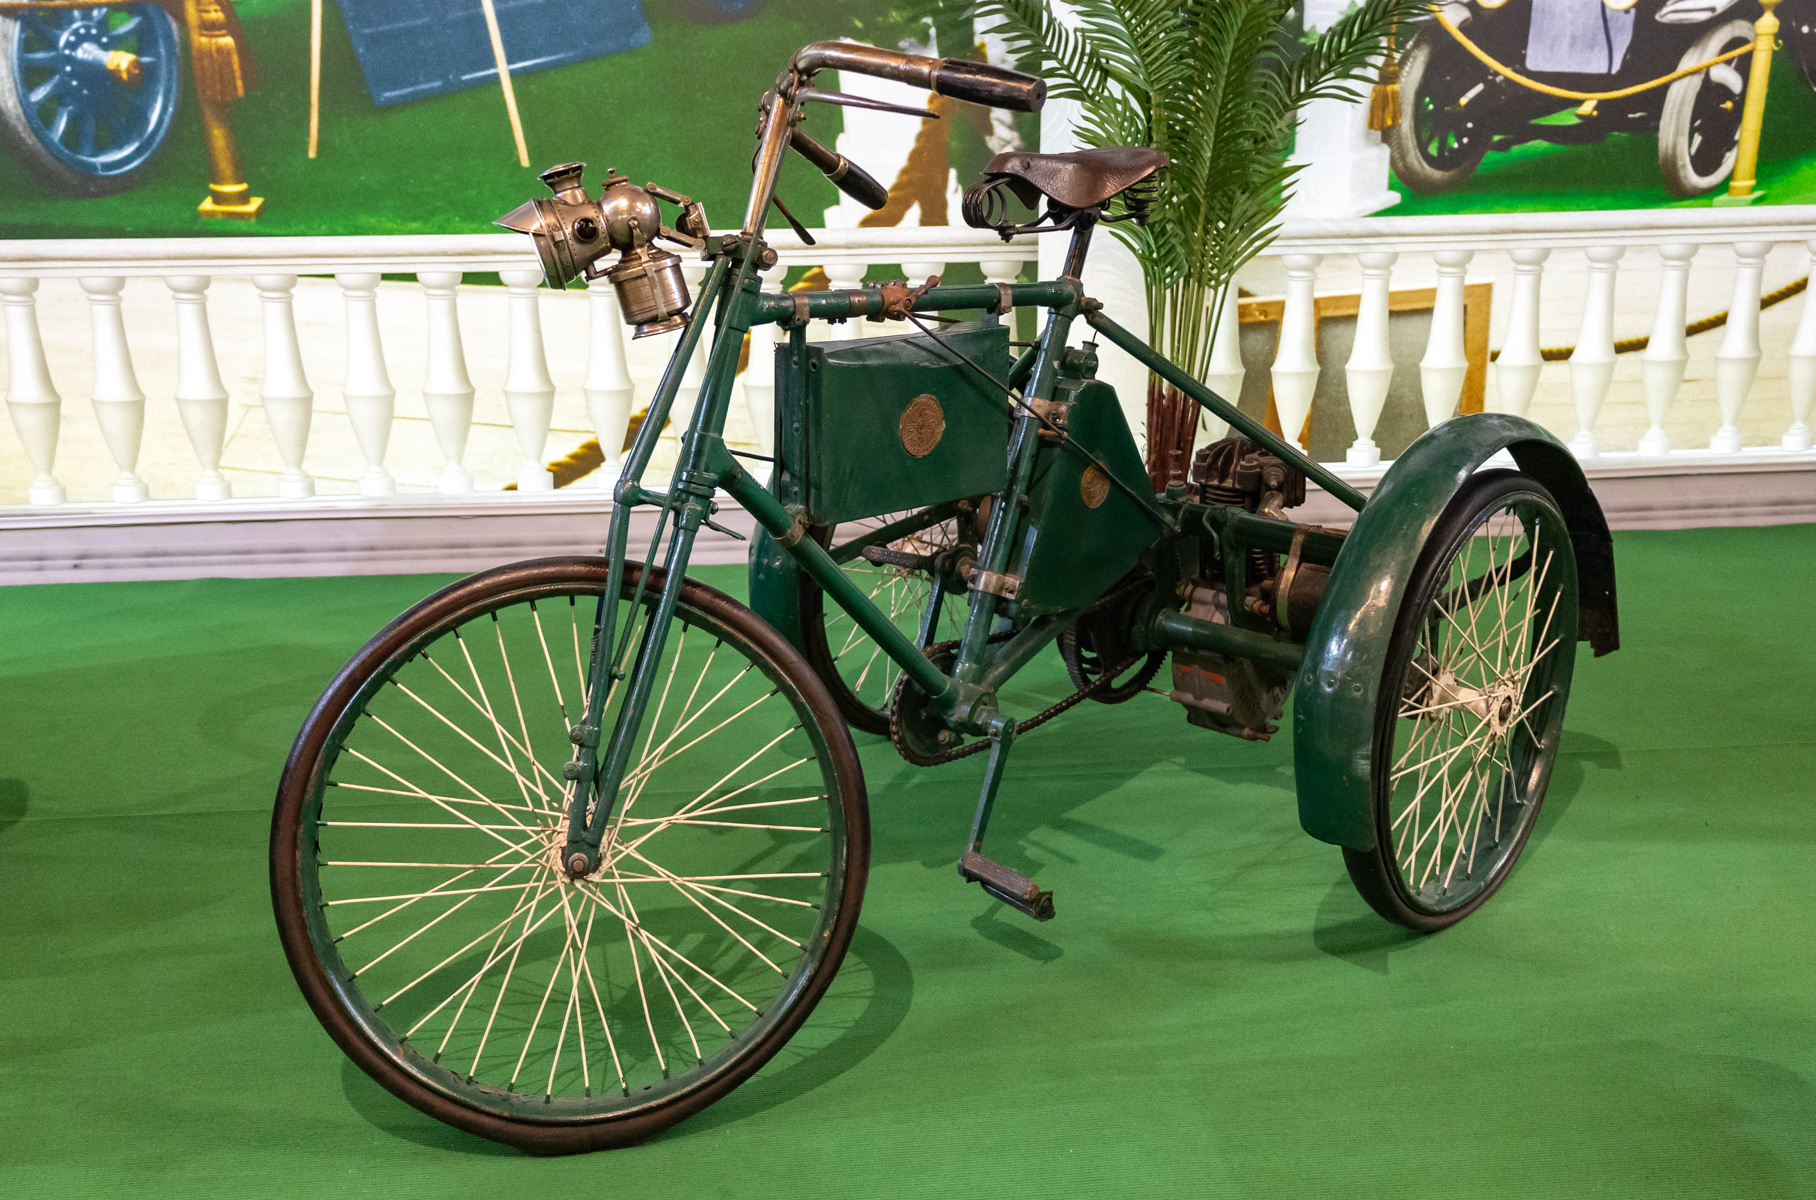 Этот моторный трицикл (трехколесный велосипед с мотором) немецкой фирмы Cudell в 1899 году завоевал золотую медаль на Международной выставке в Берлине. А потом оказался в гараже Николая II. Его мотор — это первый в мире быстроходный двигатель, он развивает до 2000 оборотов в минуту.